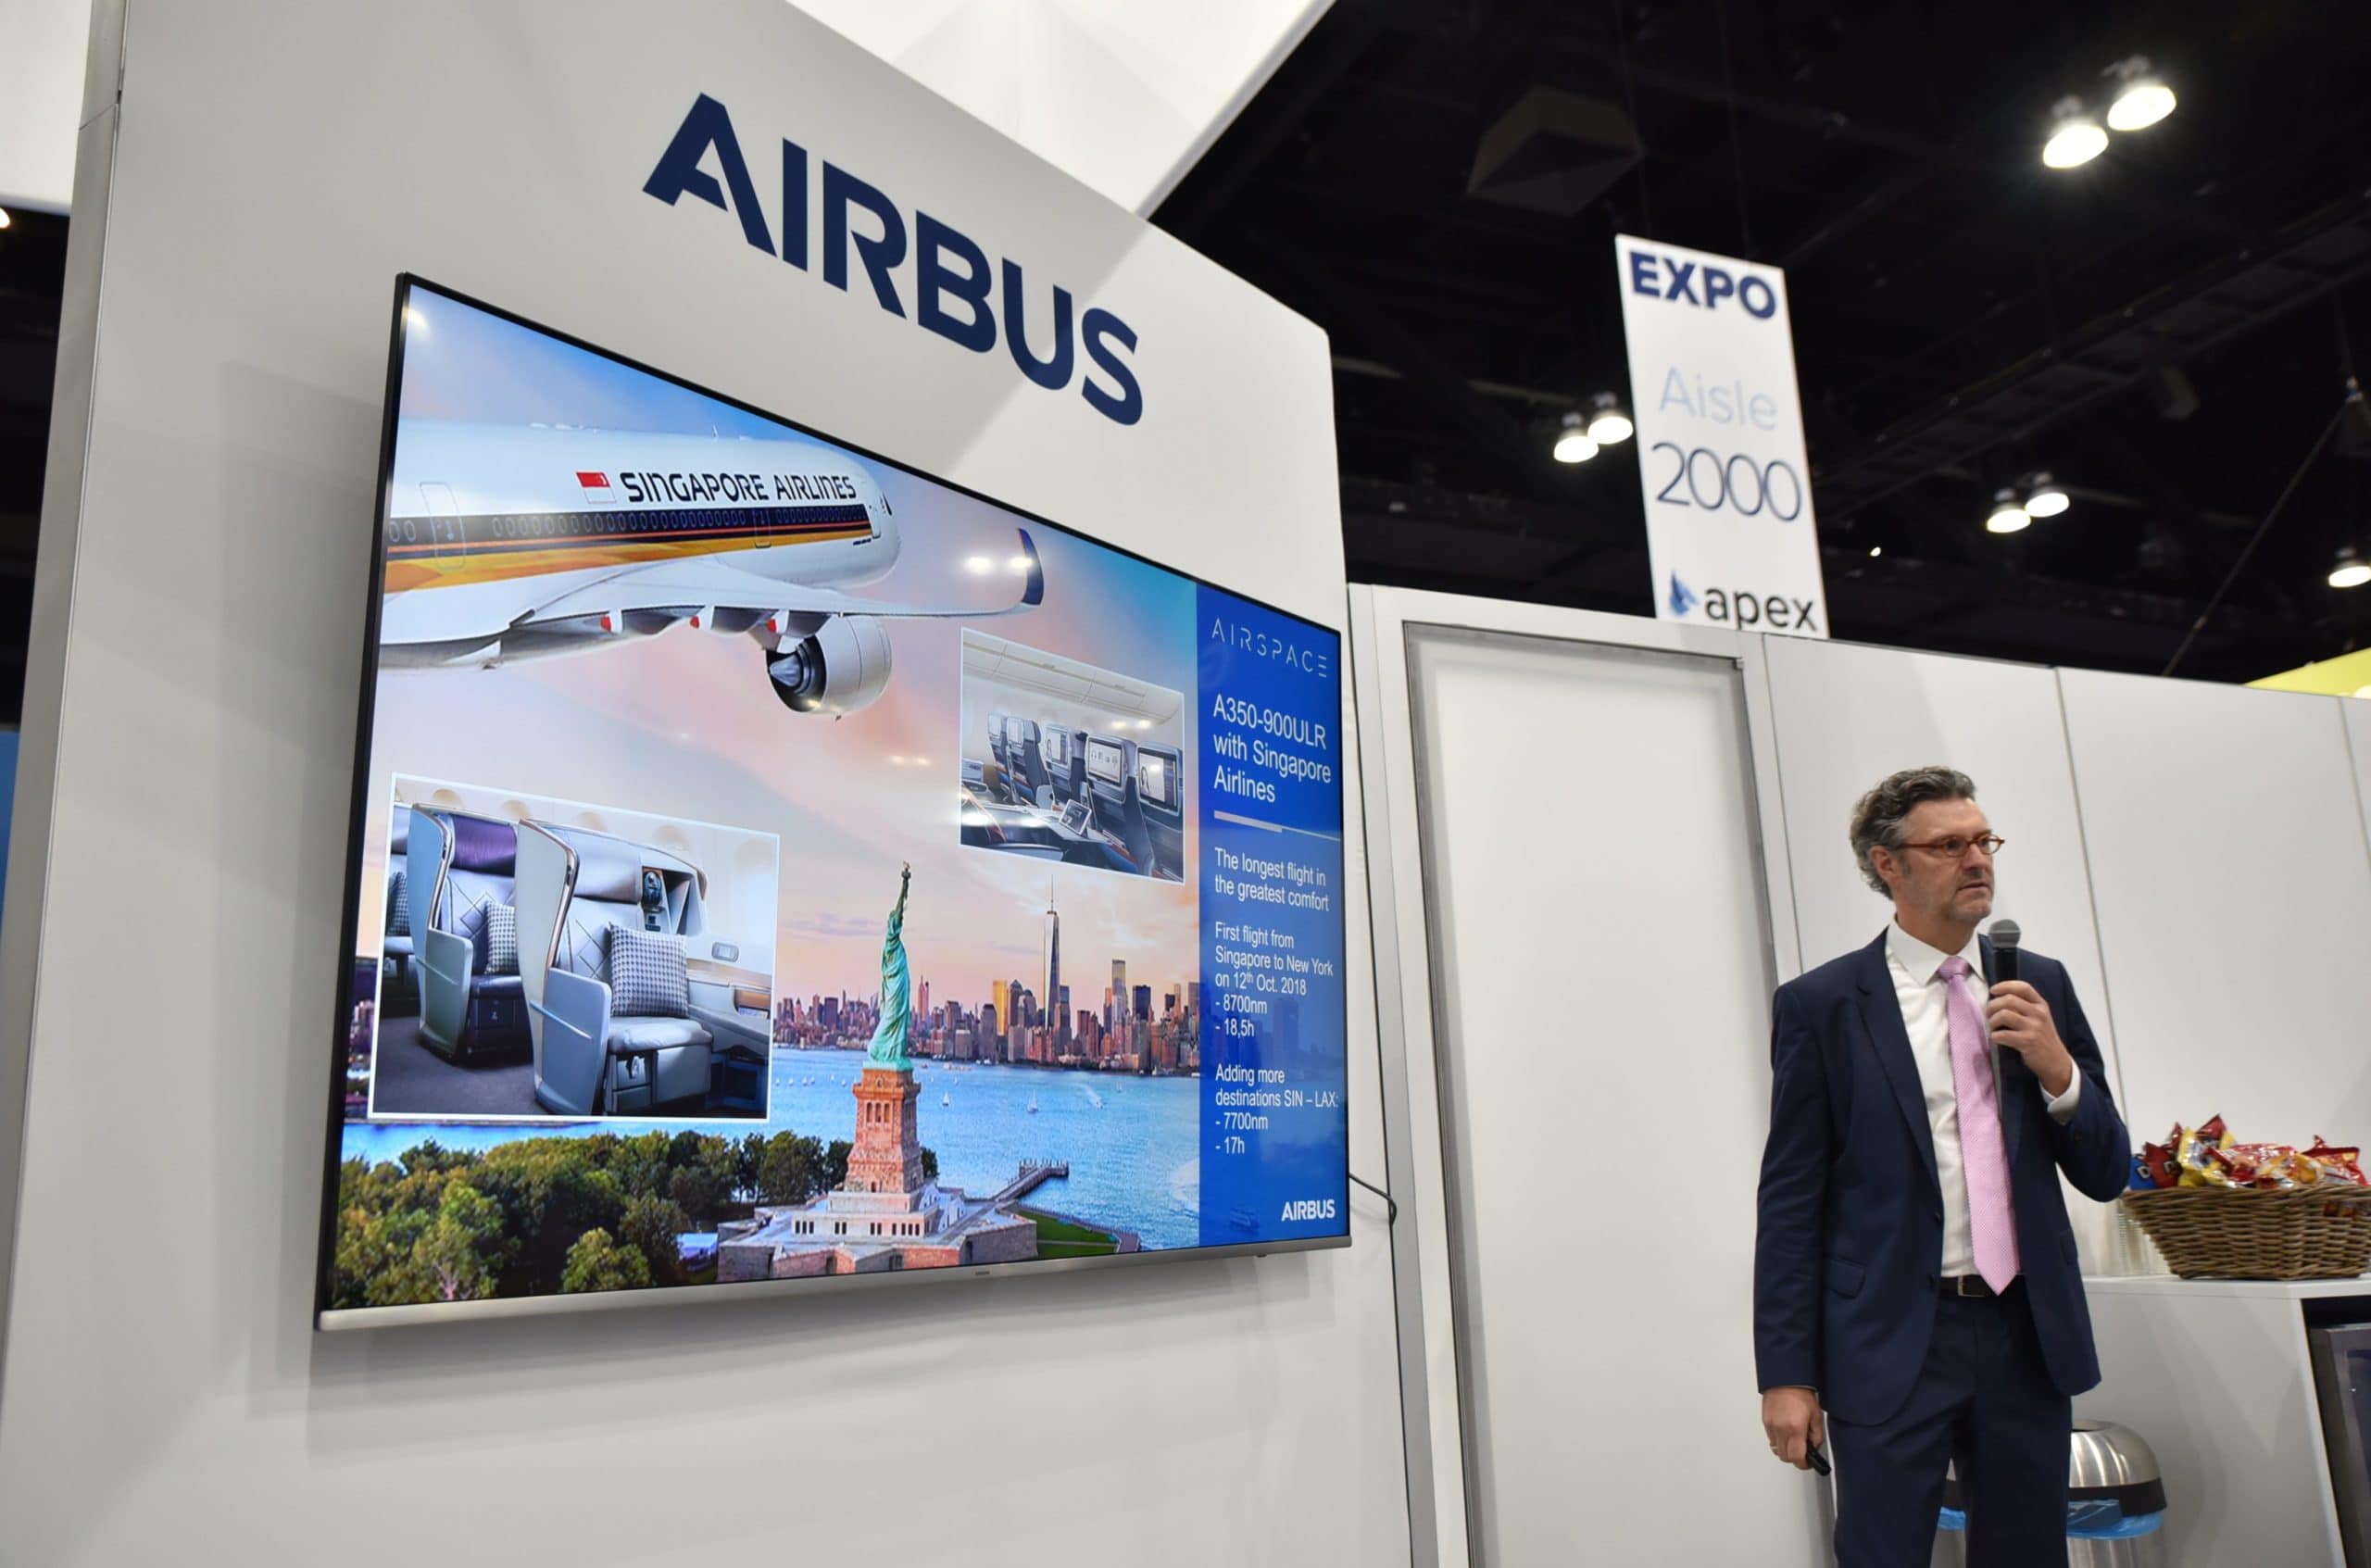 Ingo Wuggetzer, VP Marketing, Airbus. Image: Vance Walstra